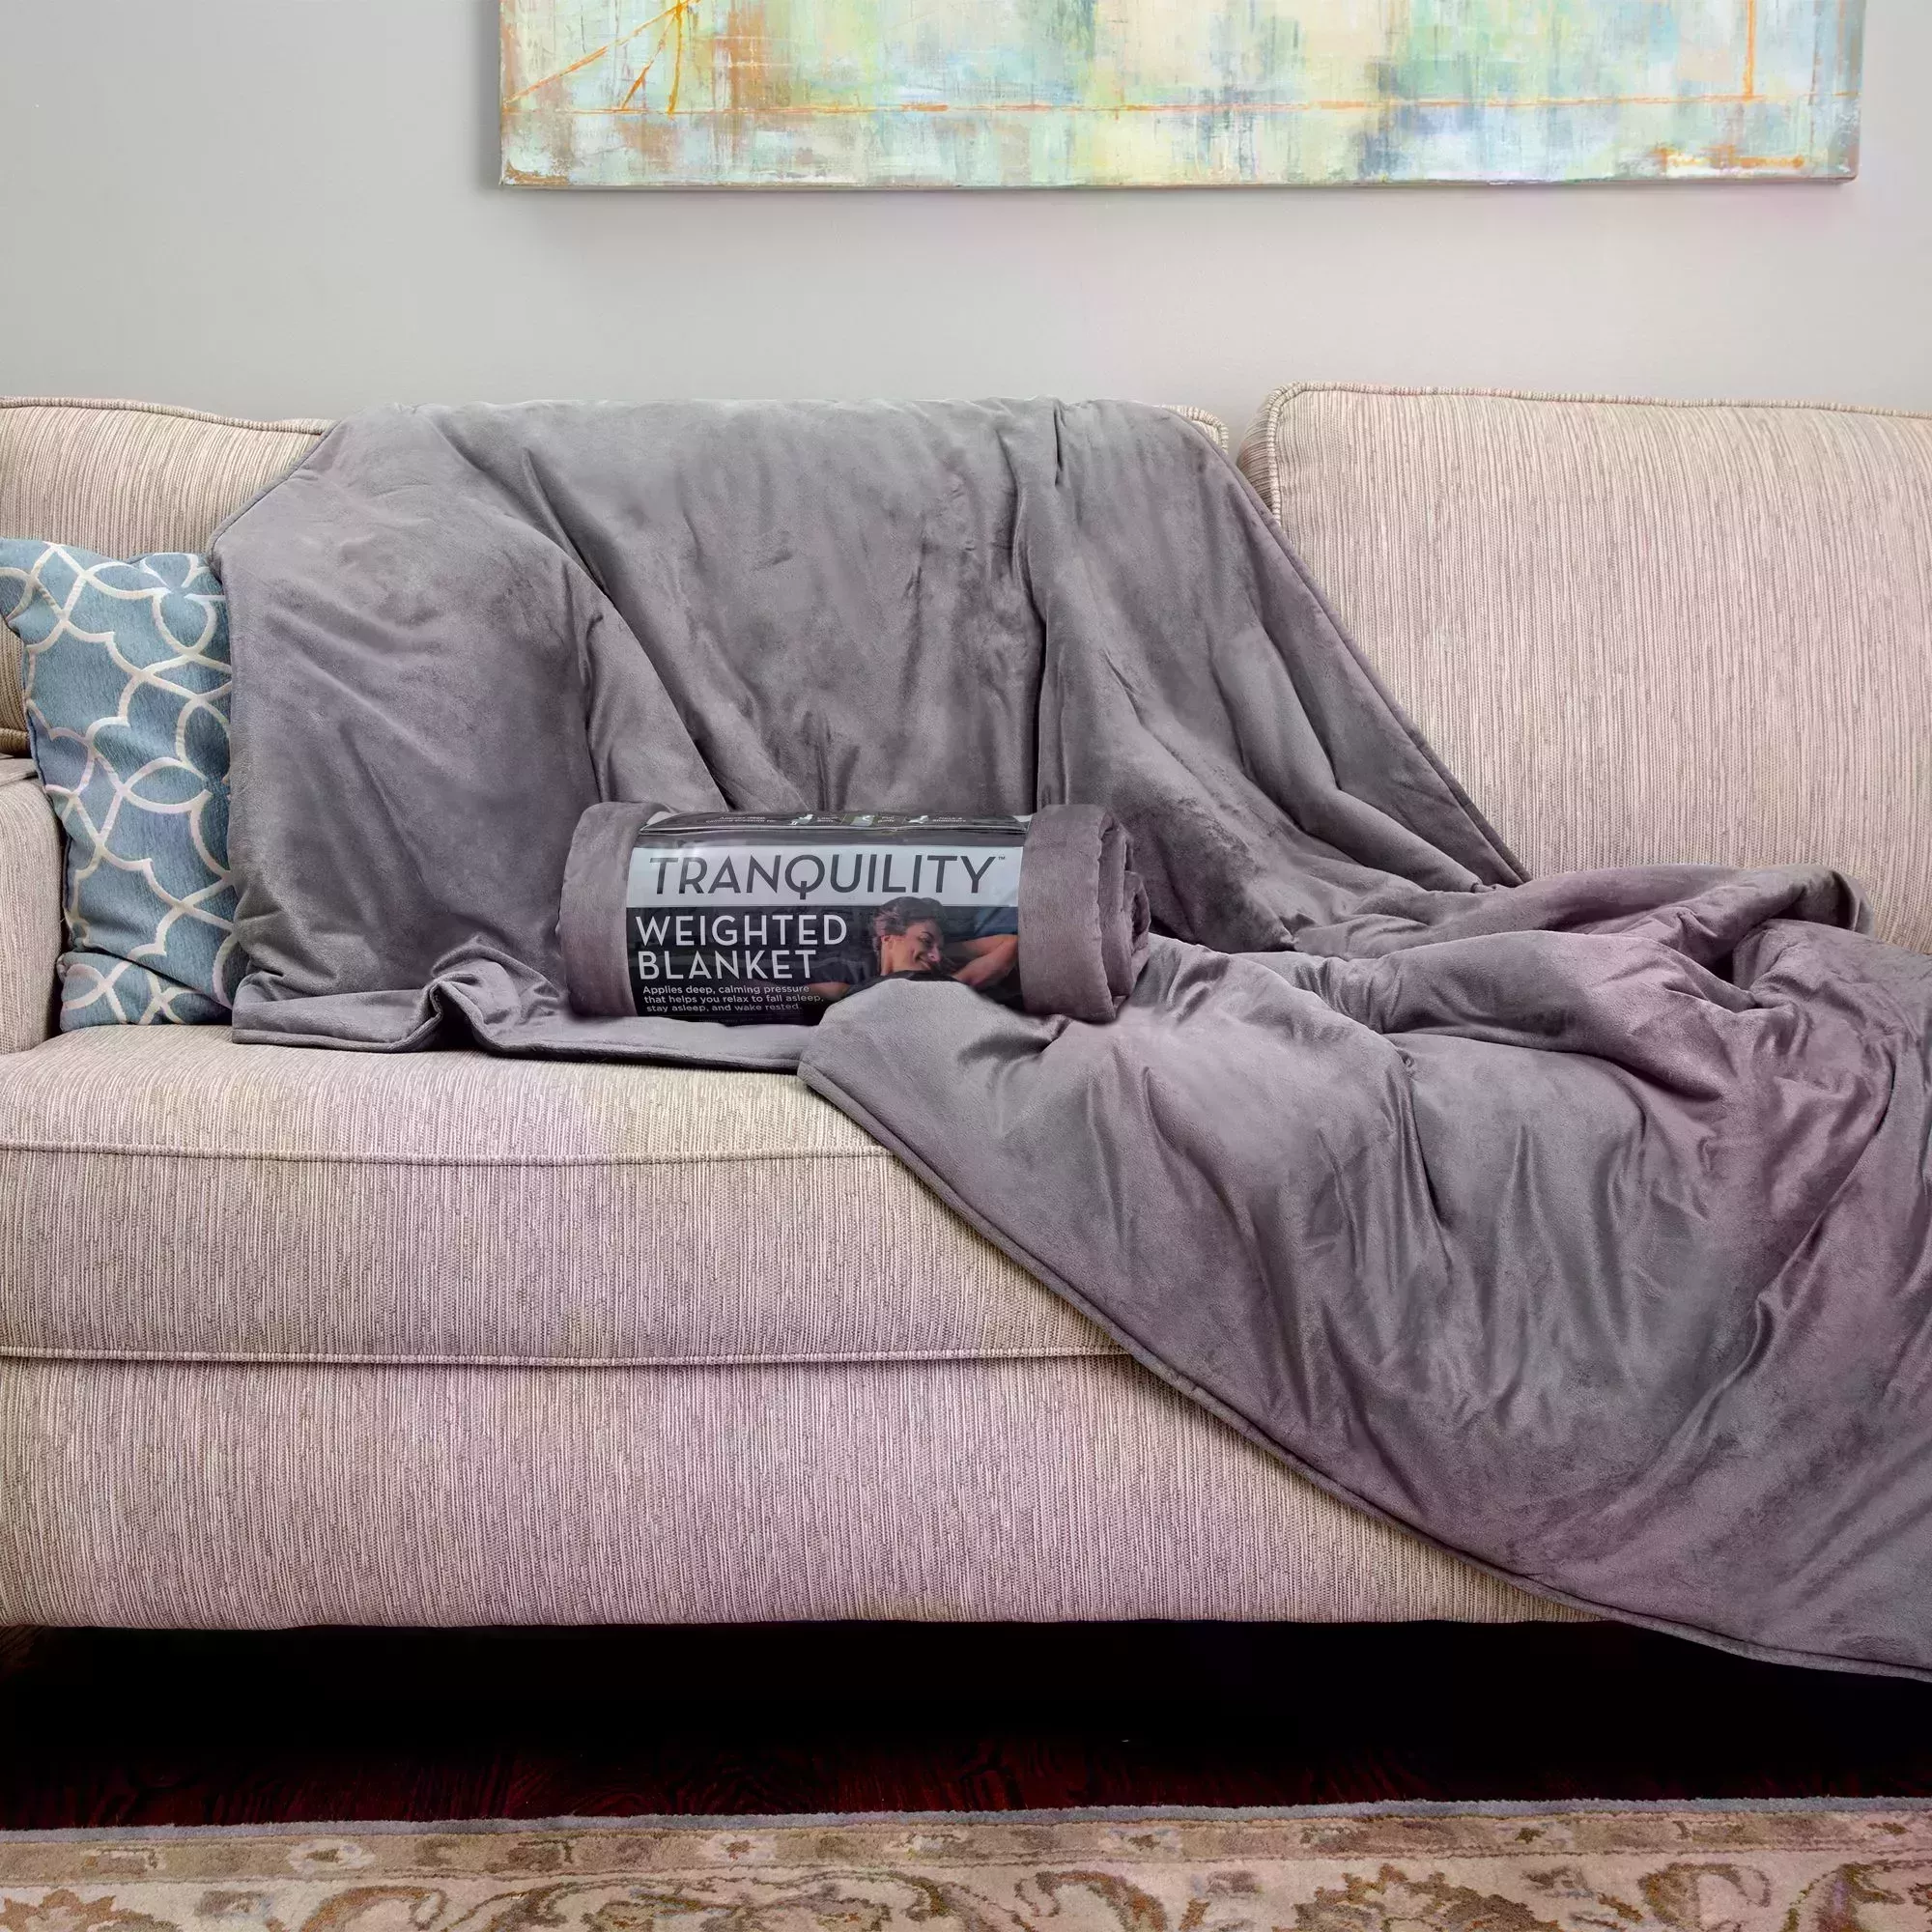 El mejor regalo de Navidad para tu mejor amiga soltera es la almohada "Novio" de 35 dólares de Amazon 